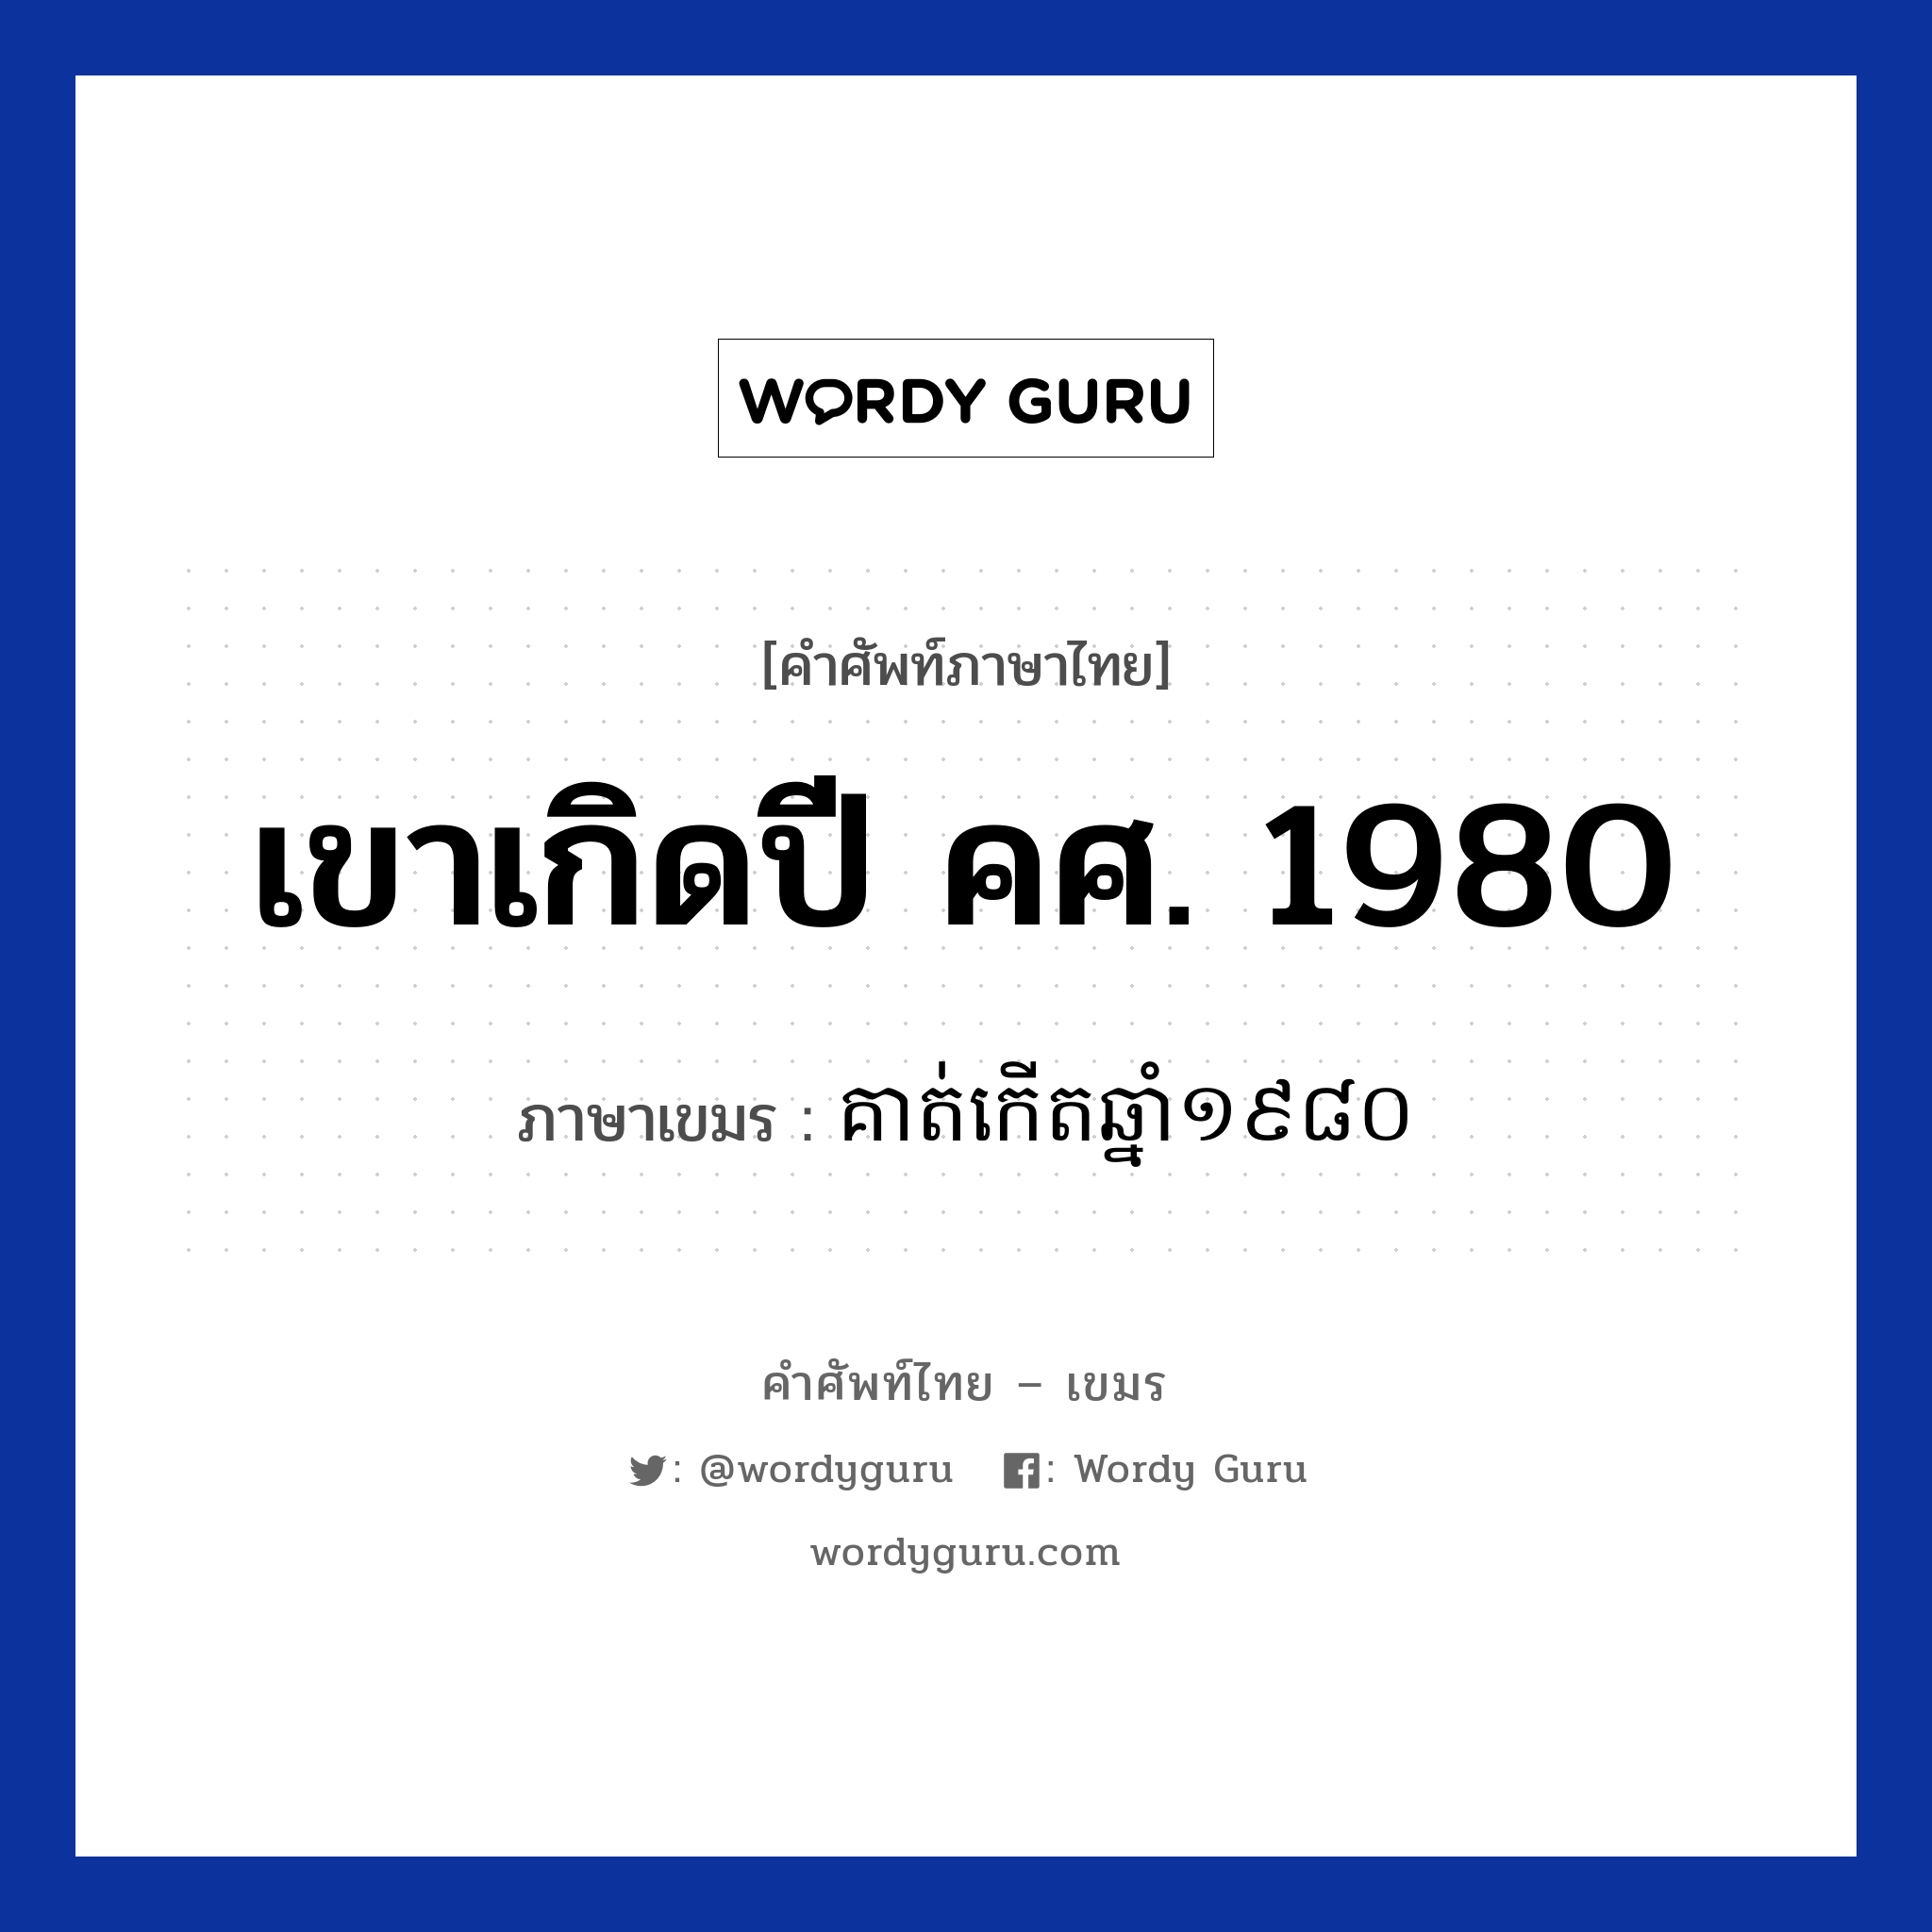 เขาเกิดปี คศ. 1980 ภาษาเขมรคืออะไร, คำศัพท์ภาษาไทย - เขมร เขาเกิดปี คศ. 1980 ภาษาเขมร គាត់កេីតឆ្នាំ​​១៩៨០ หมวด บทสนทนาเกี่ยวกับวัน เวลา Kout kert chnam mouy poun brambey roy peet sib หมวด บทสนทนาเกี่ยวกับวัน เวลา